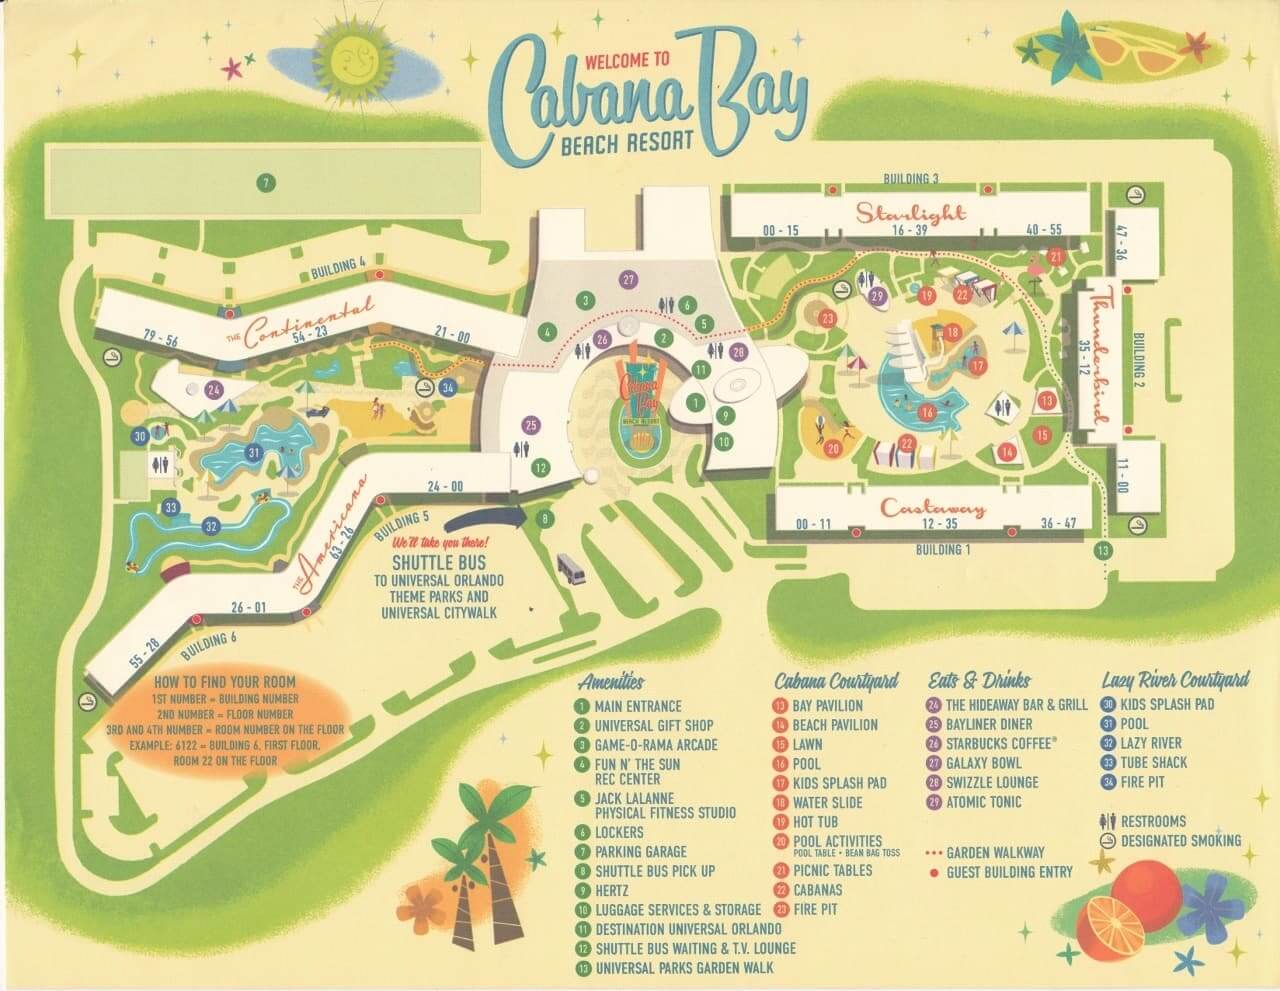 Mapa do hotel Cabana Bay Beach Resort da Universal em Orlando